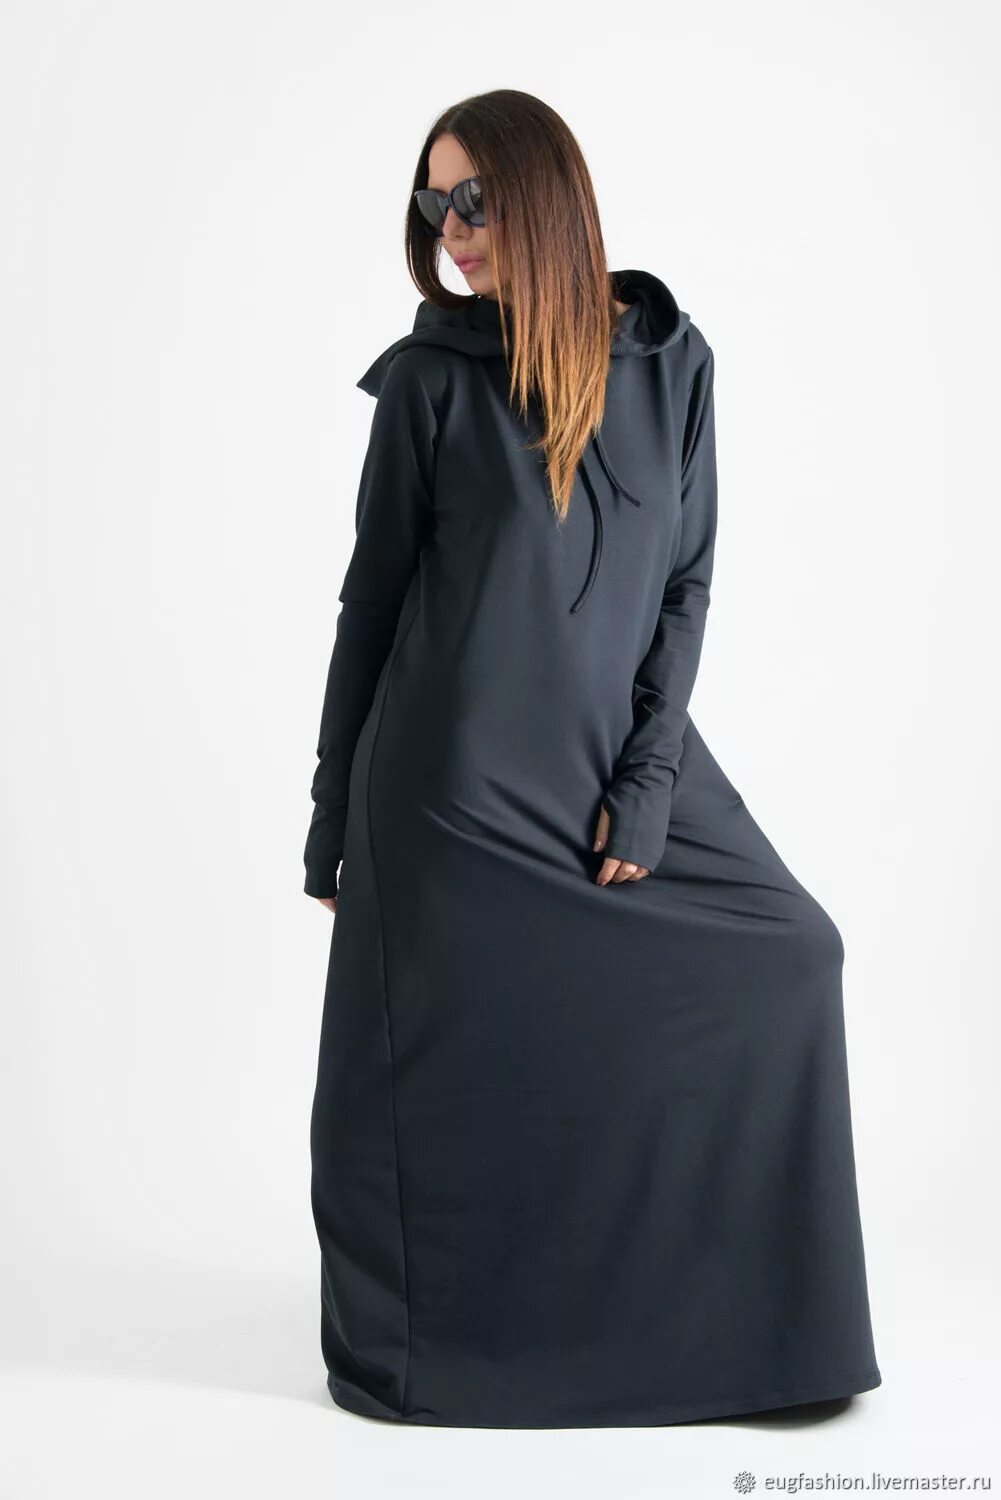 Платье с капюшоном Uniqlo черное длинное. Платье макси балахон. Спортивные платья с капюшоном длинные. Черное длинное платье с капюшоном.